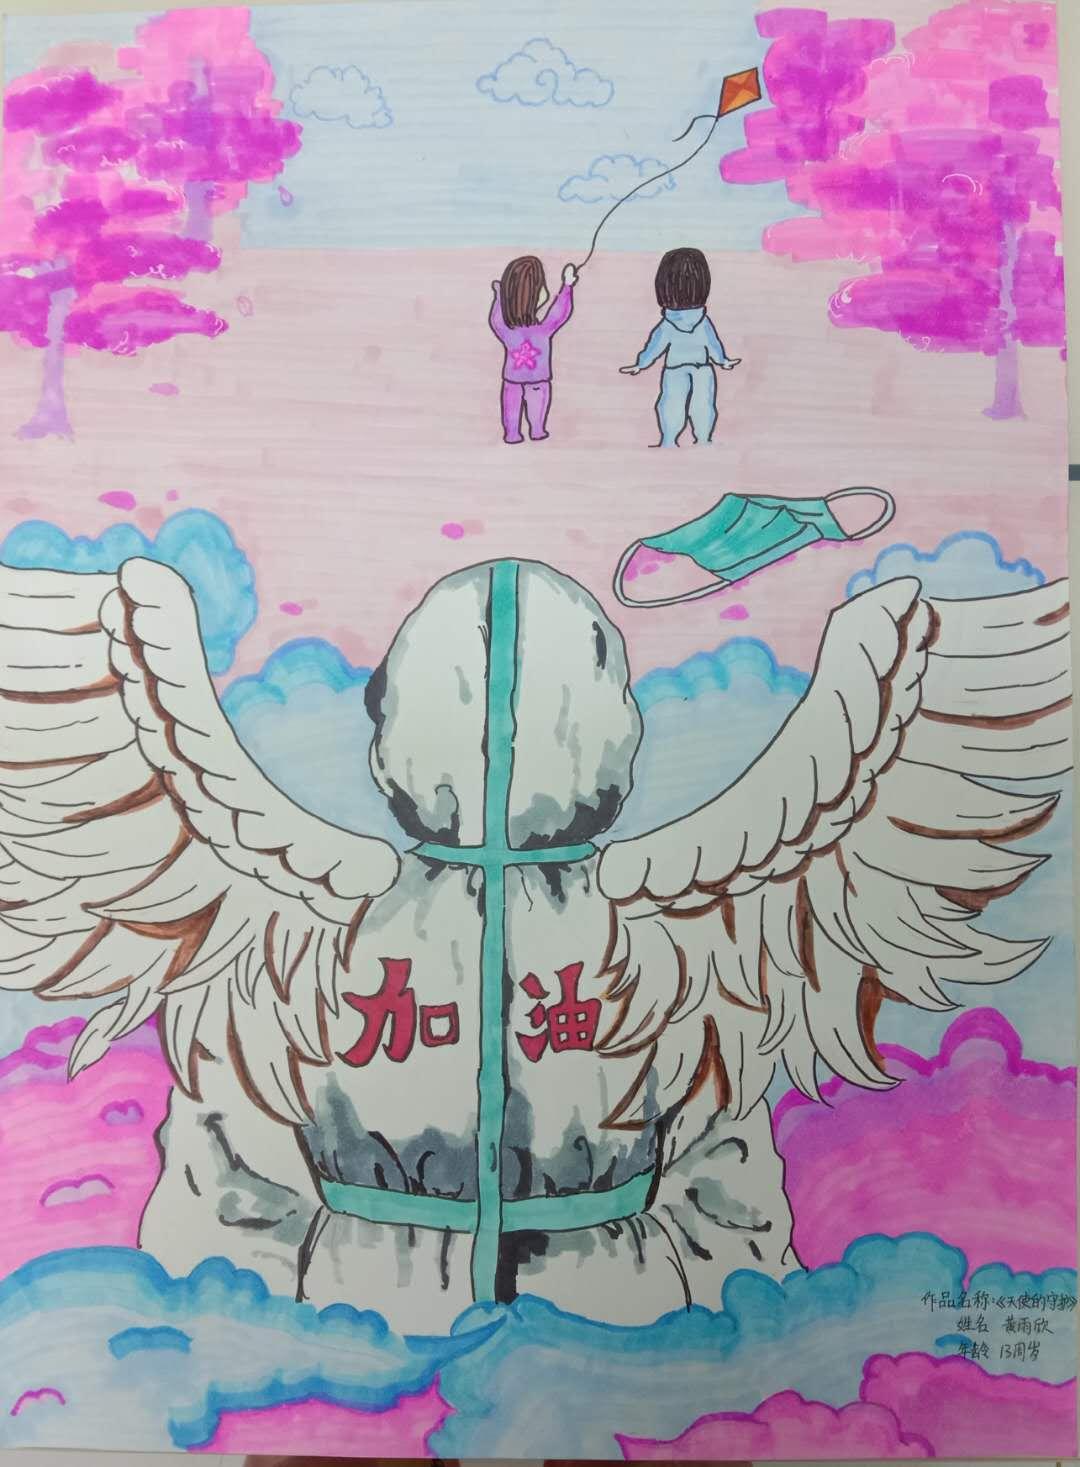 《天使的翅膀》黄雨欣 13岁 第二名 幼儿组